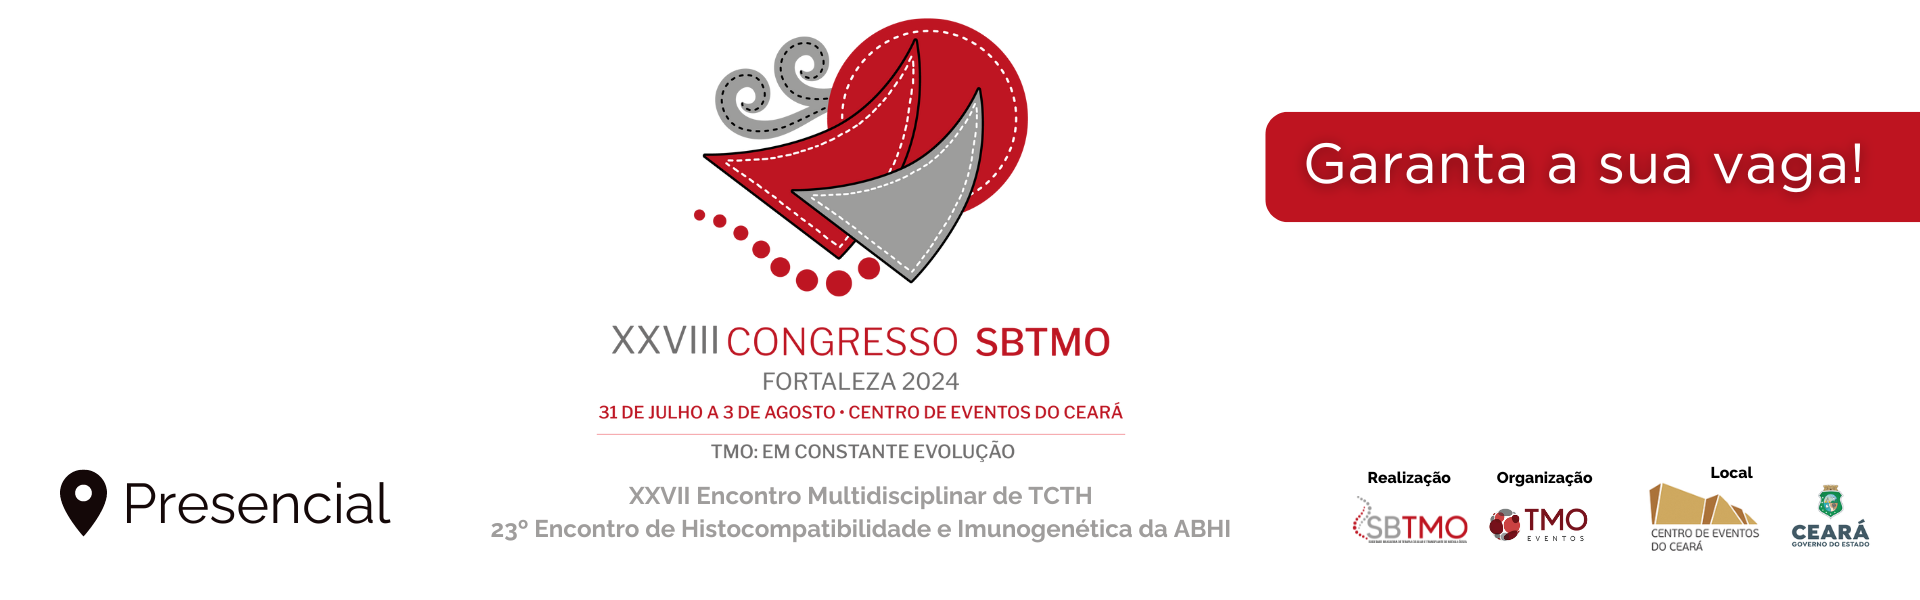 XXVIII Congresso SBTMO e 23º Encontro de Histocompatibilidade e Imunogenética ABHI